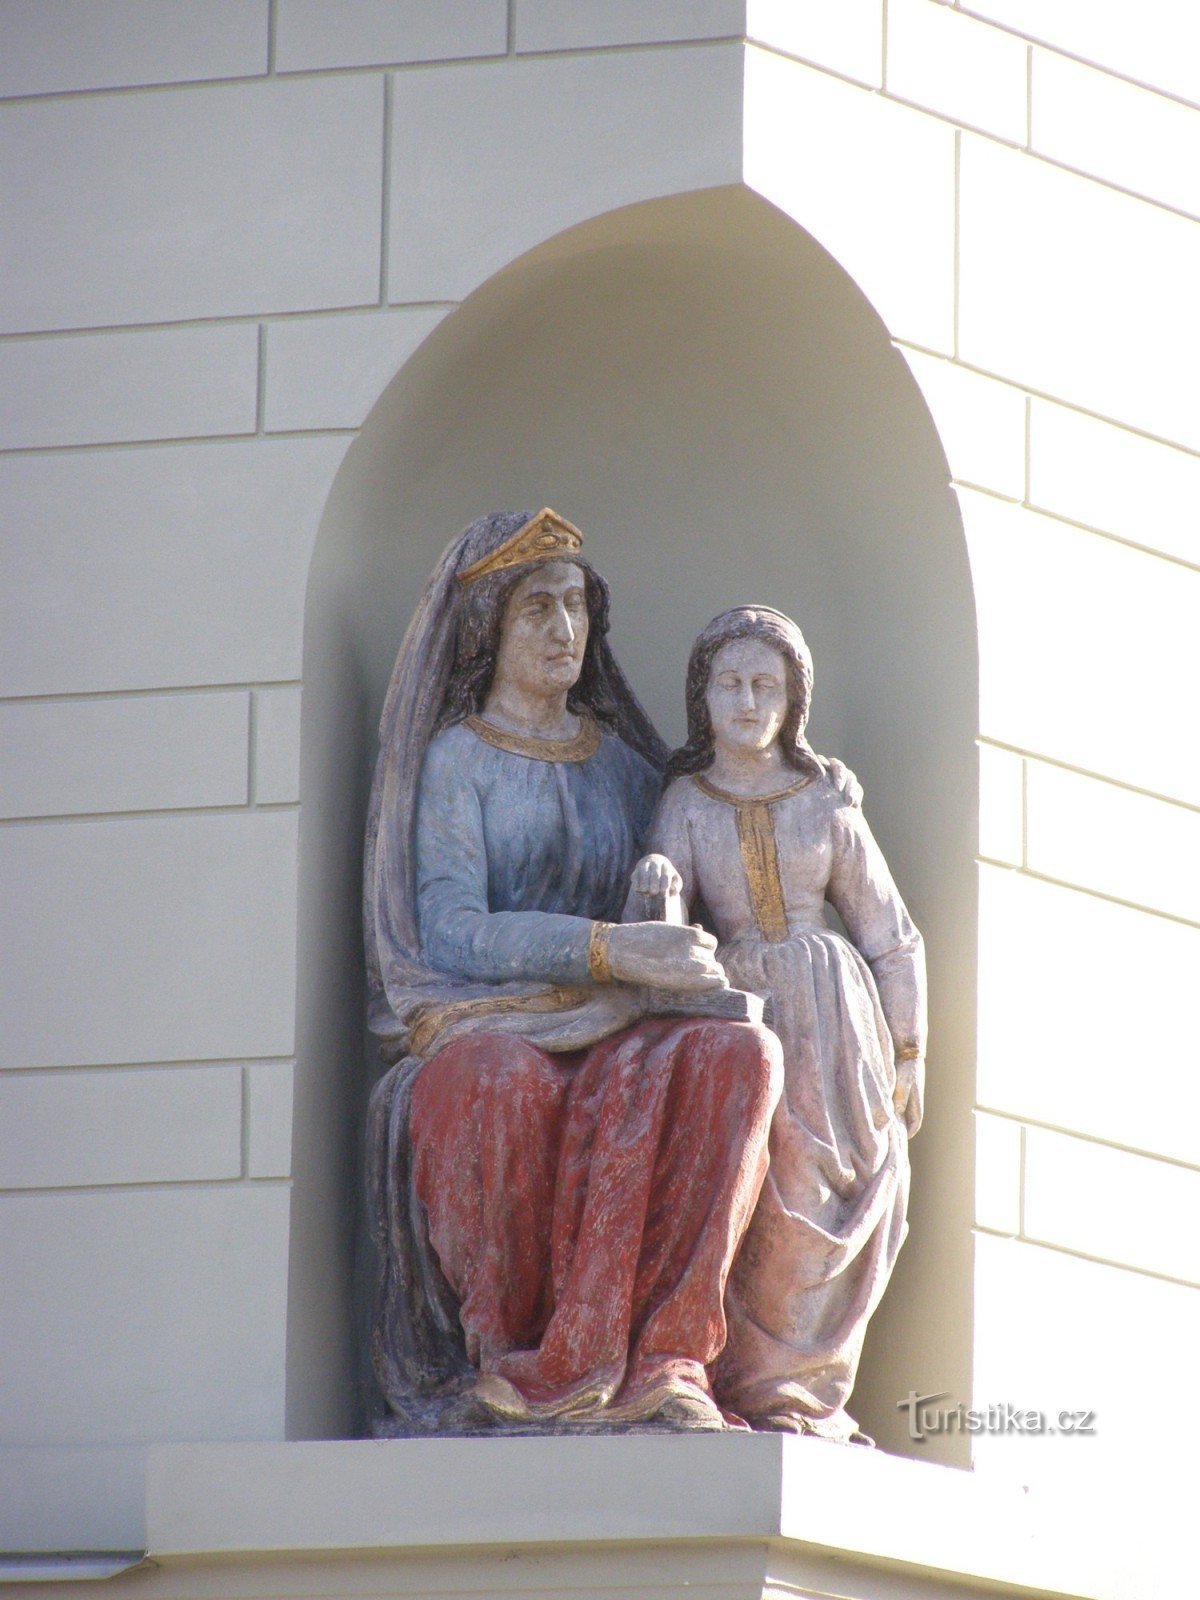 Týnec nad Labem - casa borghese n. 74 con la statua di S. Anna e la Vergine Maria